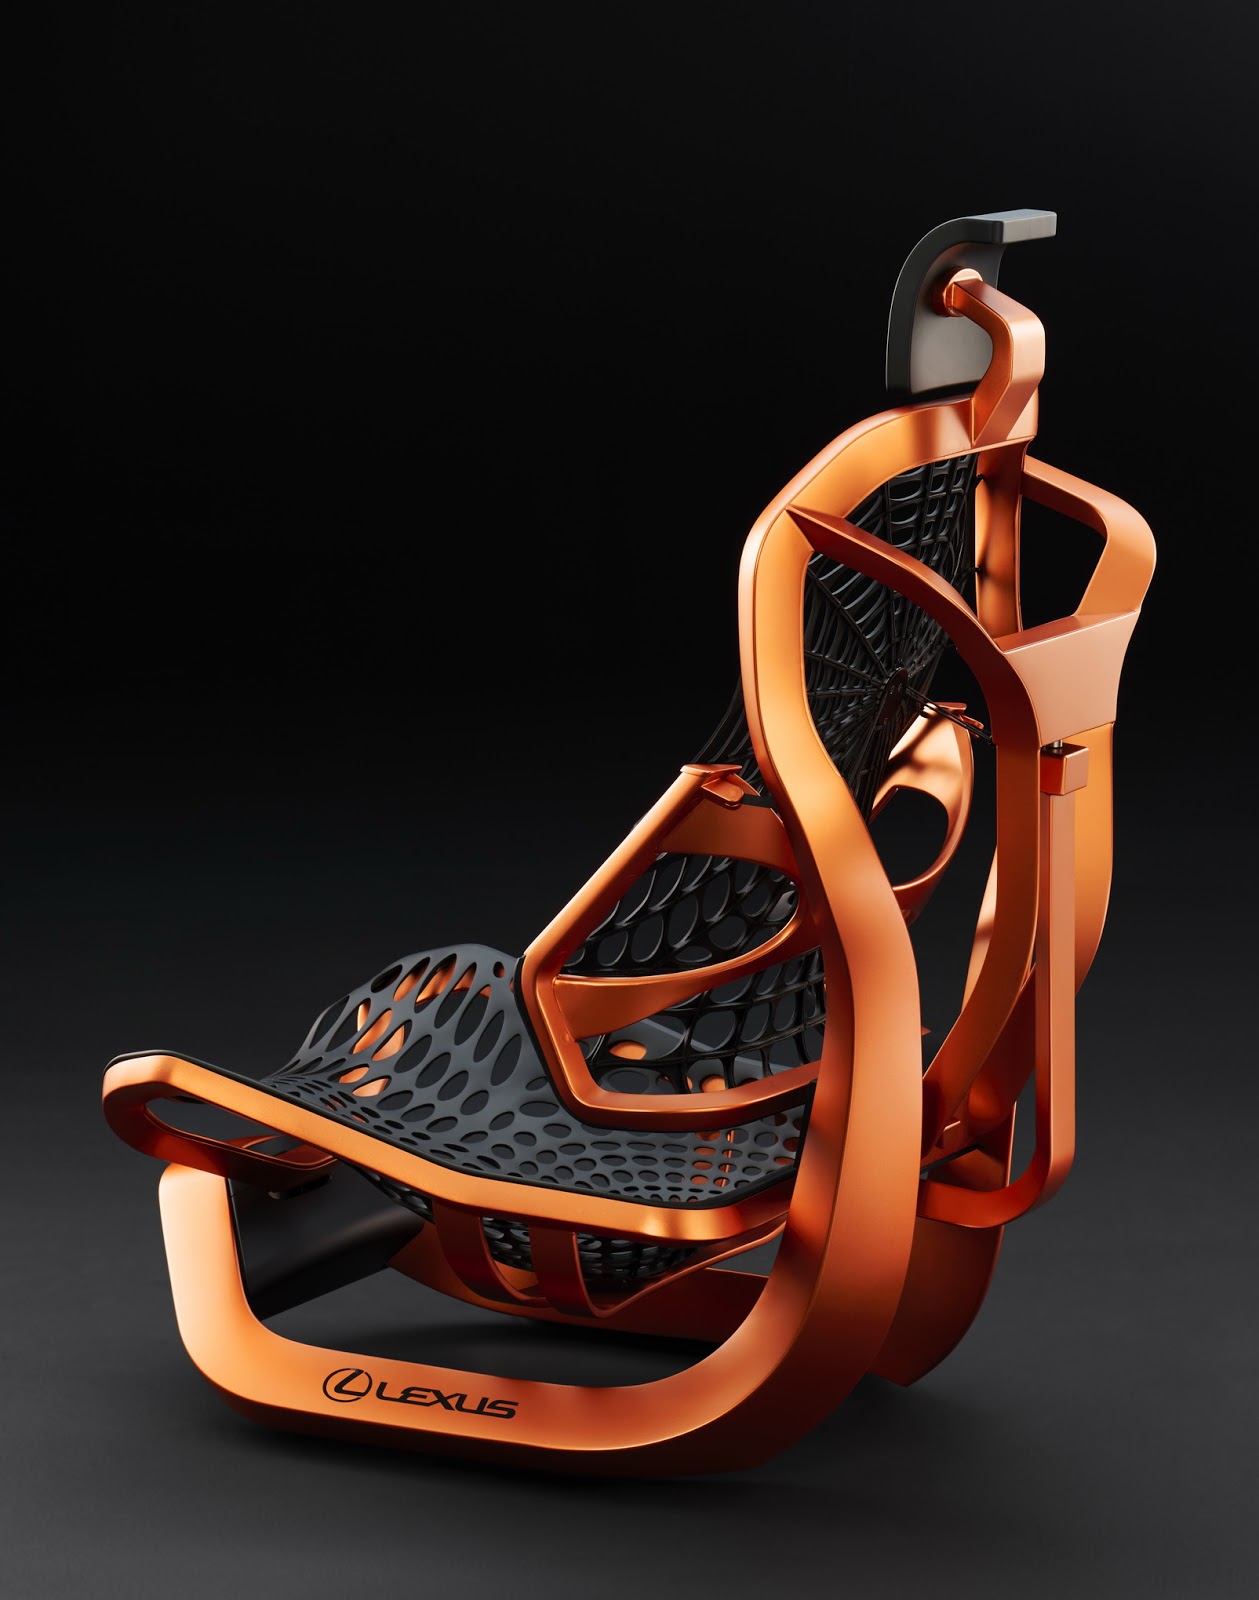 lexus-kinetic-seat-concept-paris-10